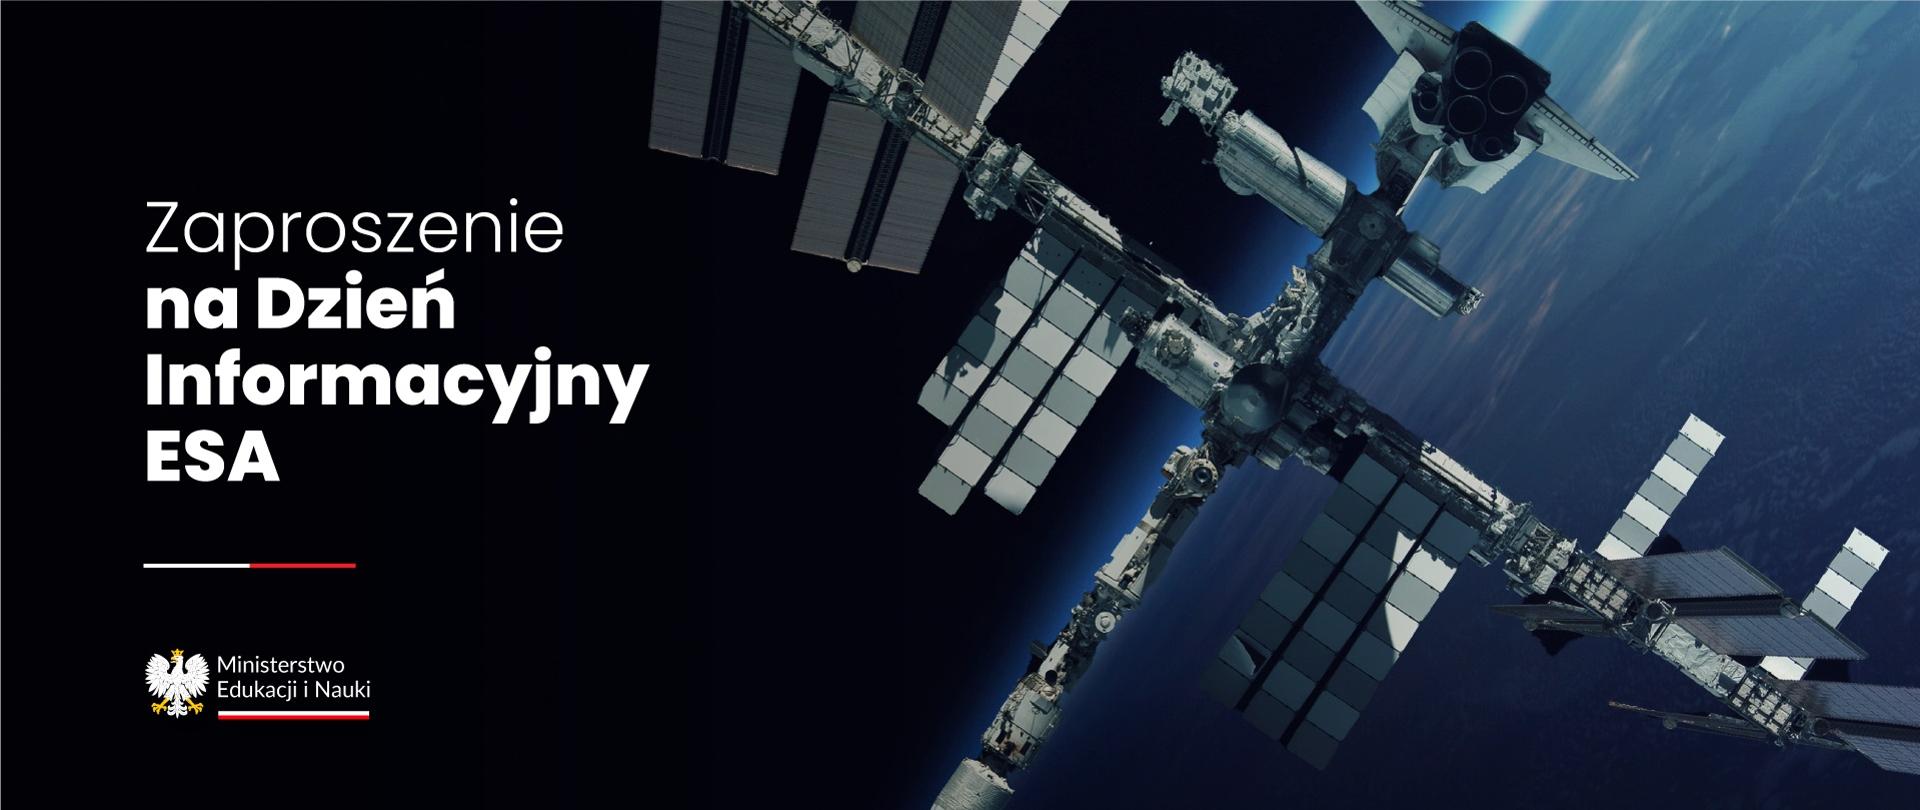 Międzynarodowa Stacja Kosmiczna na tle horyzontu ziemi, obok napis Zaproszenie na Dzień Informacyjny ESA.